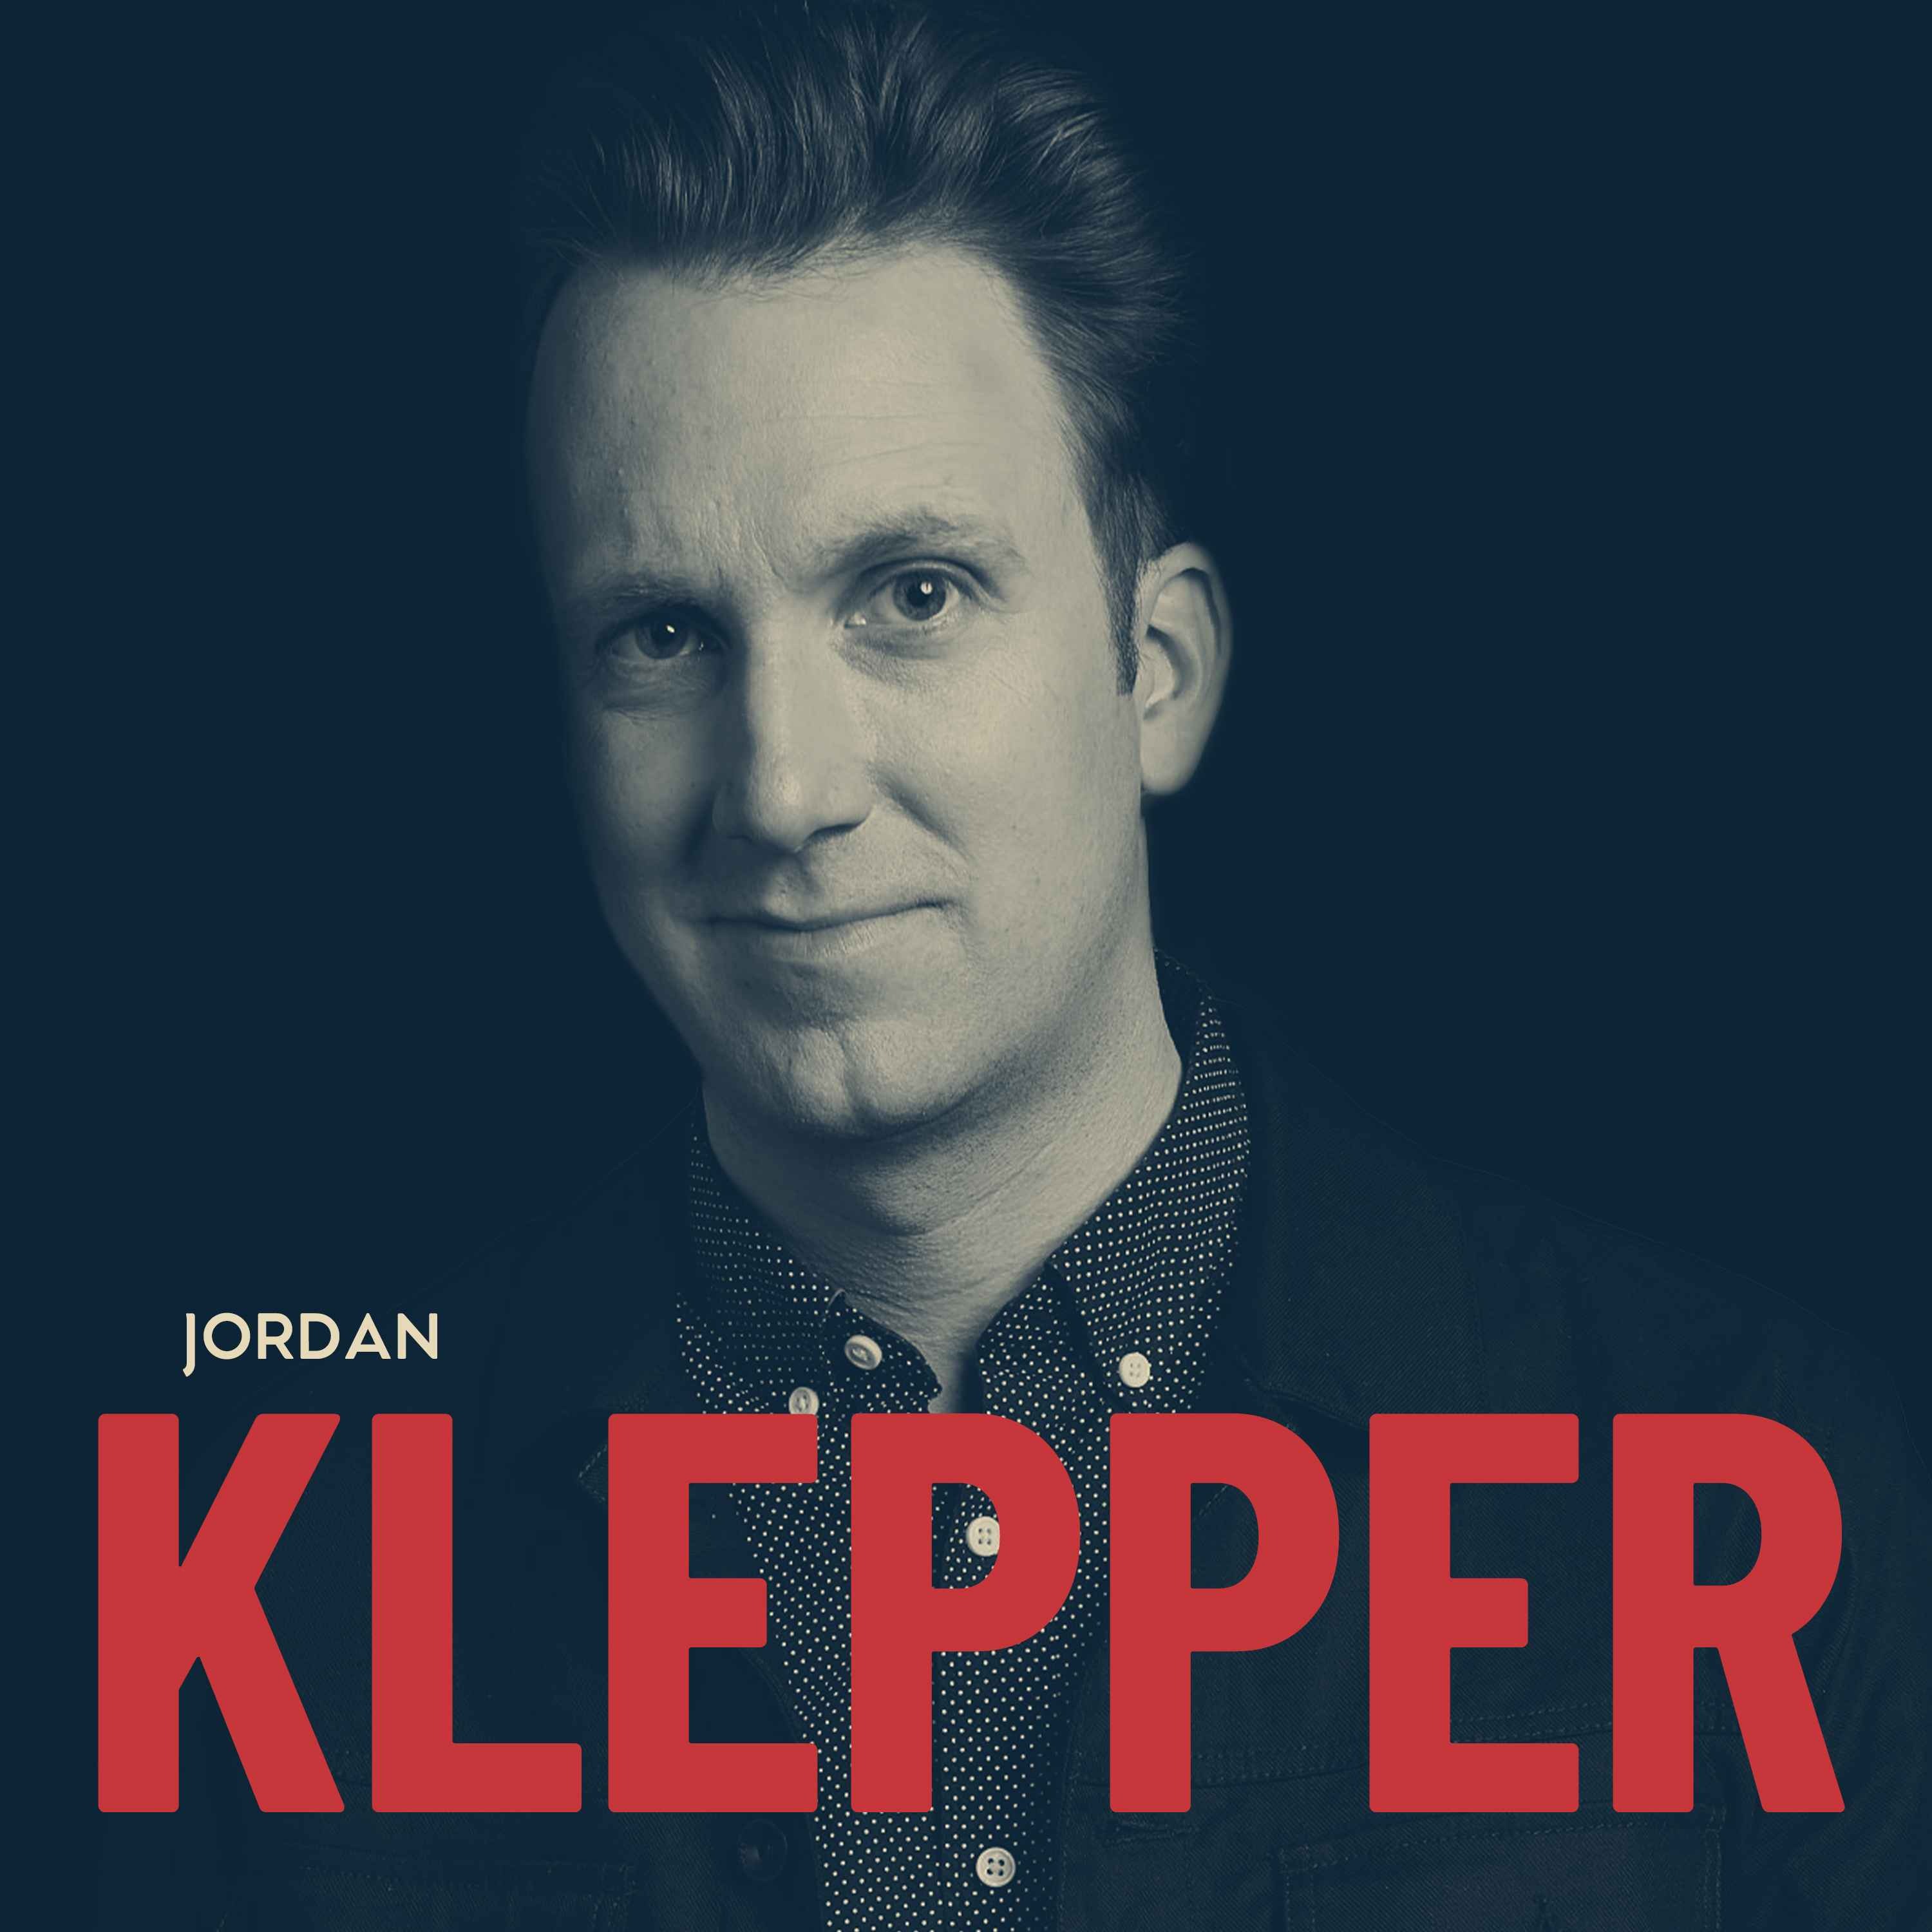 Jordan Klepper